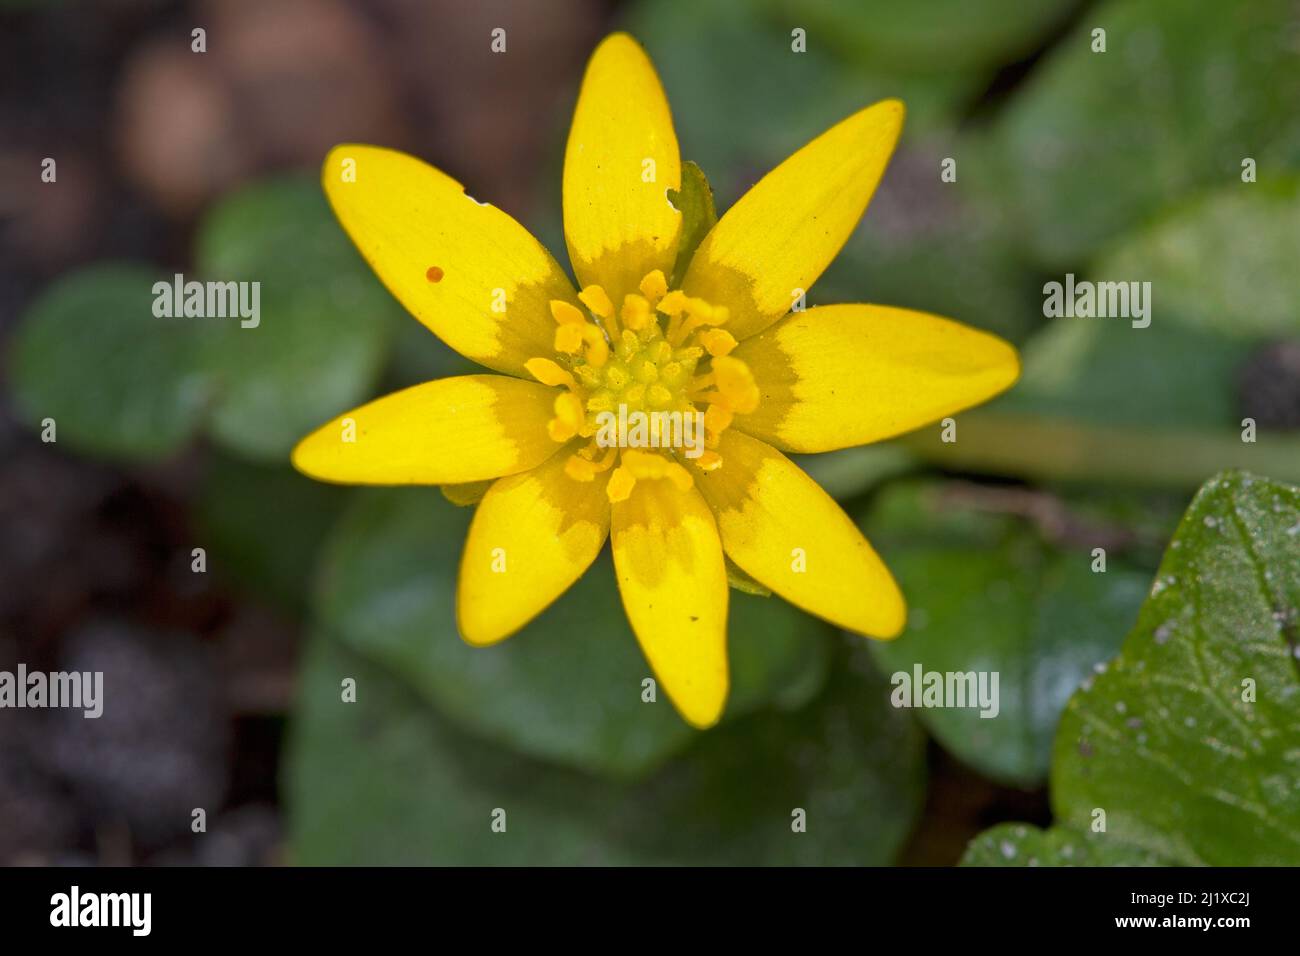 Celandina minore, un bel fiore giallo all'inizio della primavera Foto Stock